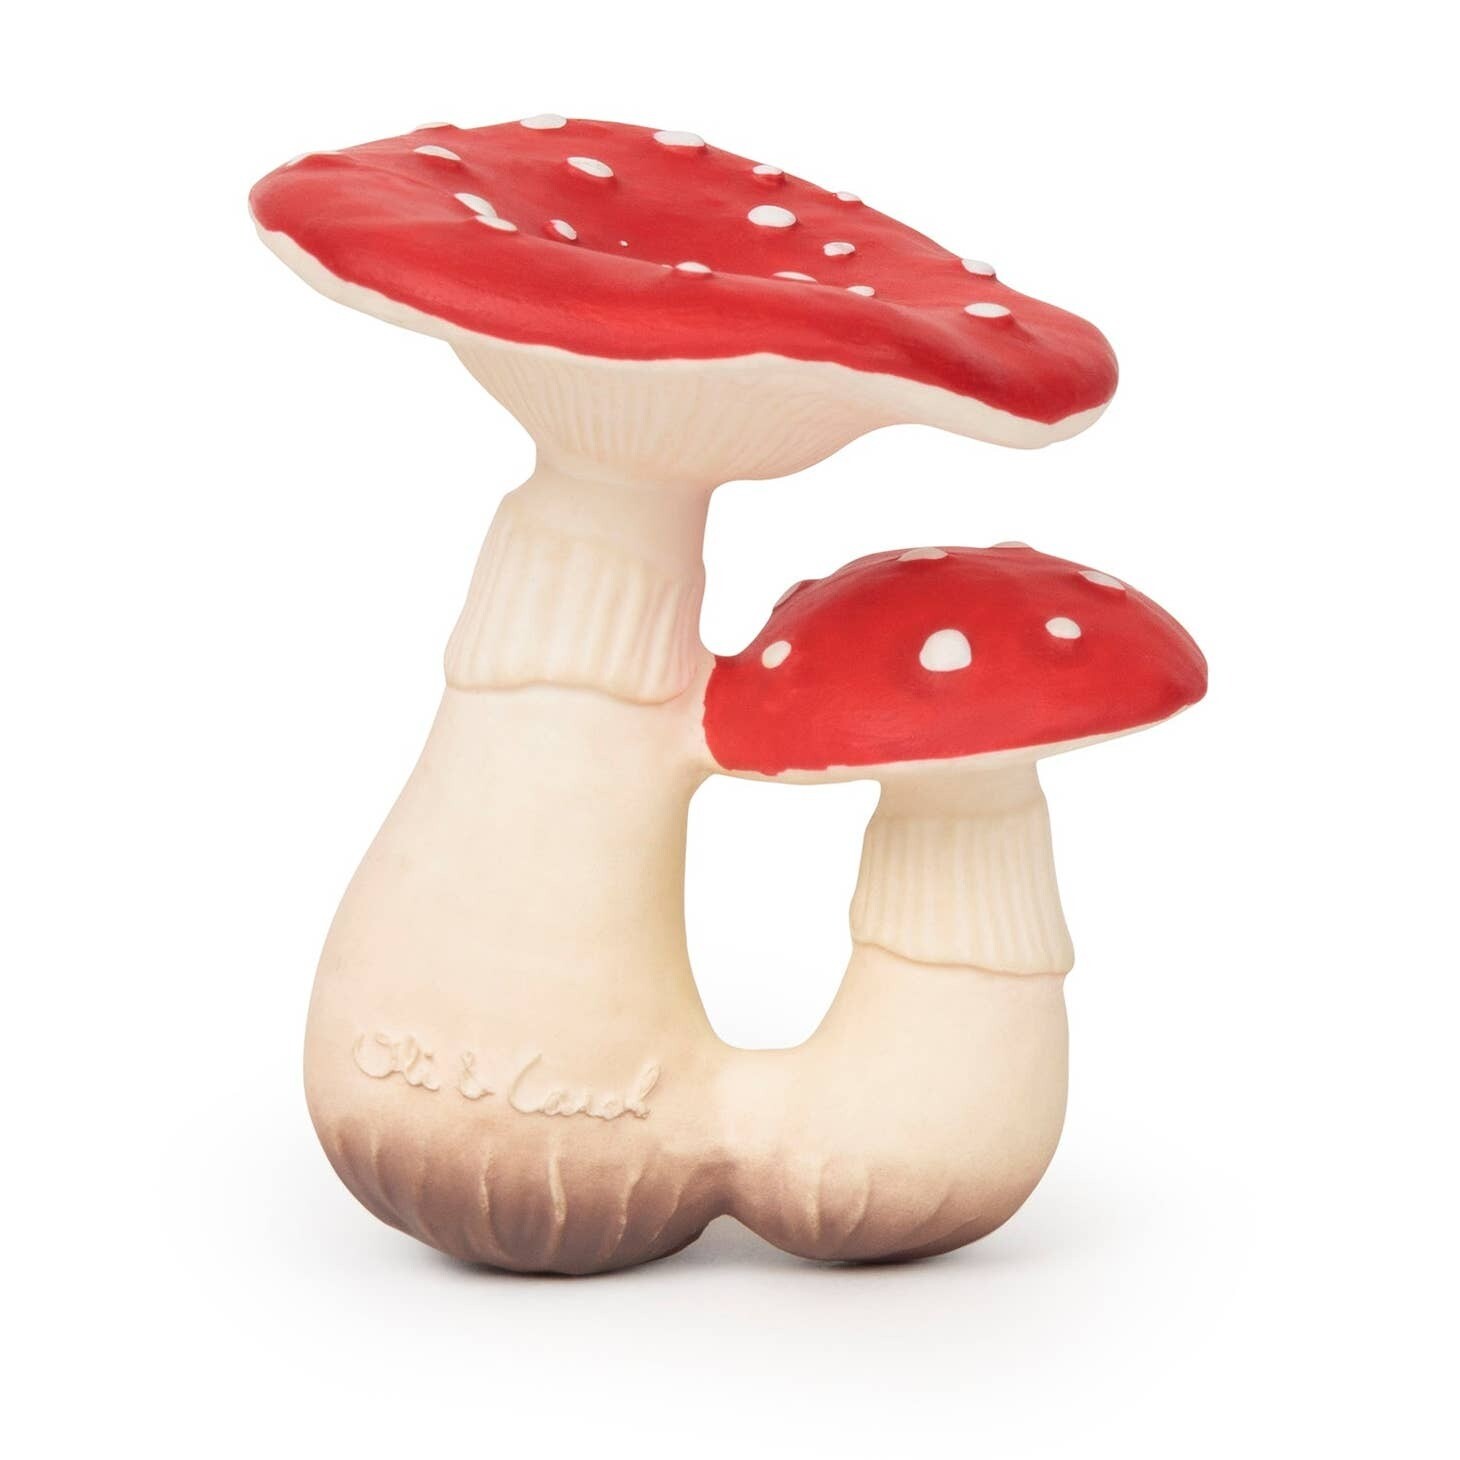 Big Mushroom Chewy